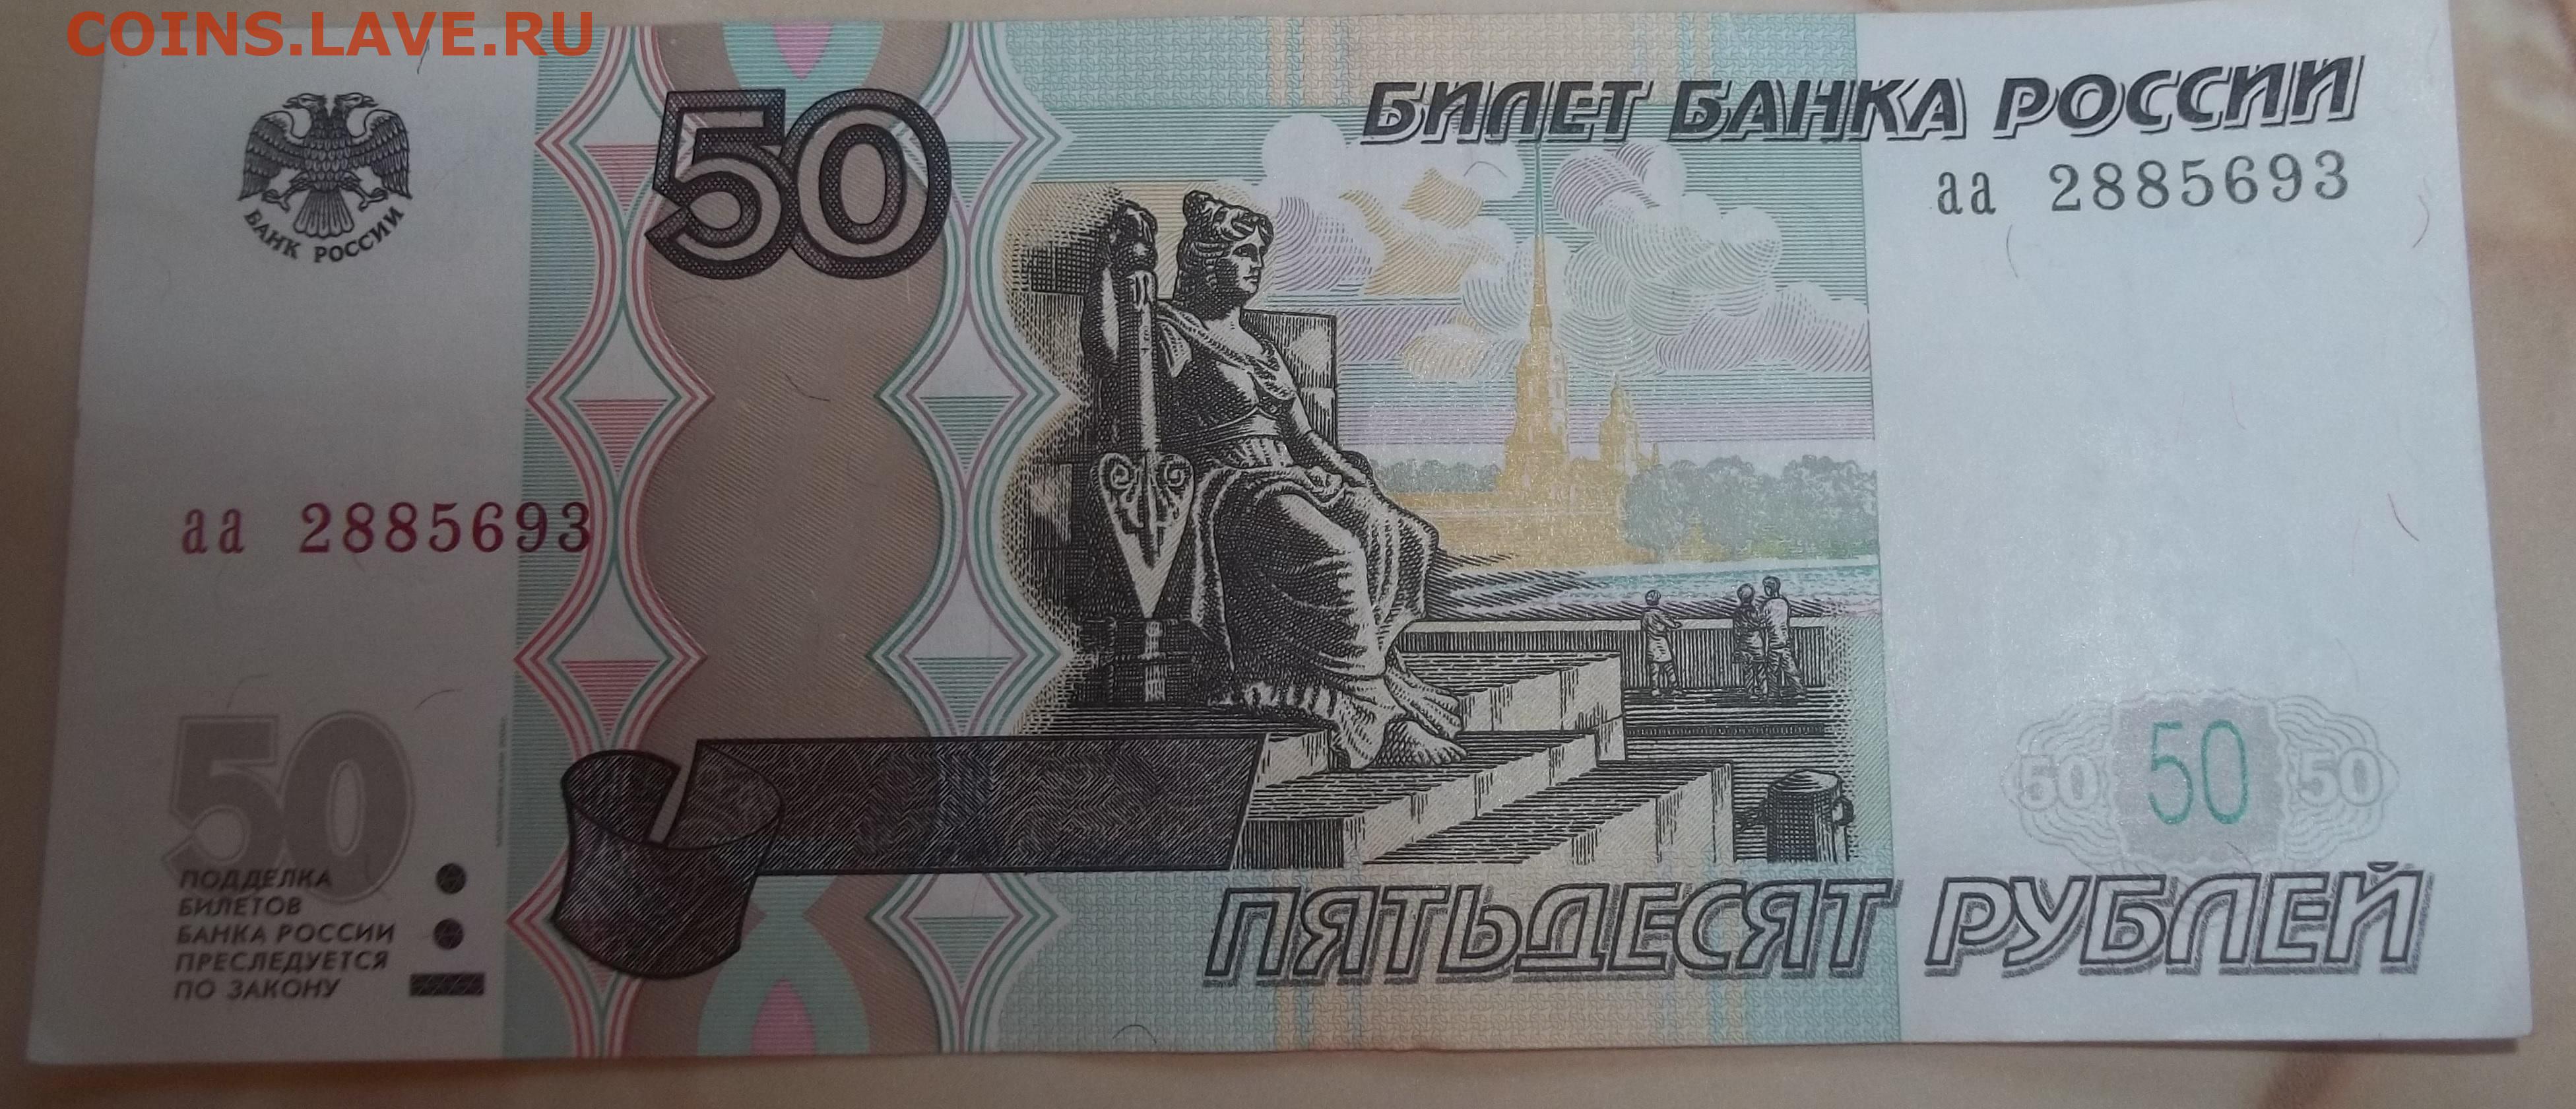 50 рублей словами. 50 Рублей 1997. 50 Рублей. Купюра 50 рублей. Банкнота 50 рублей.